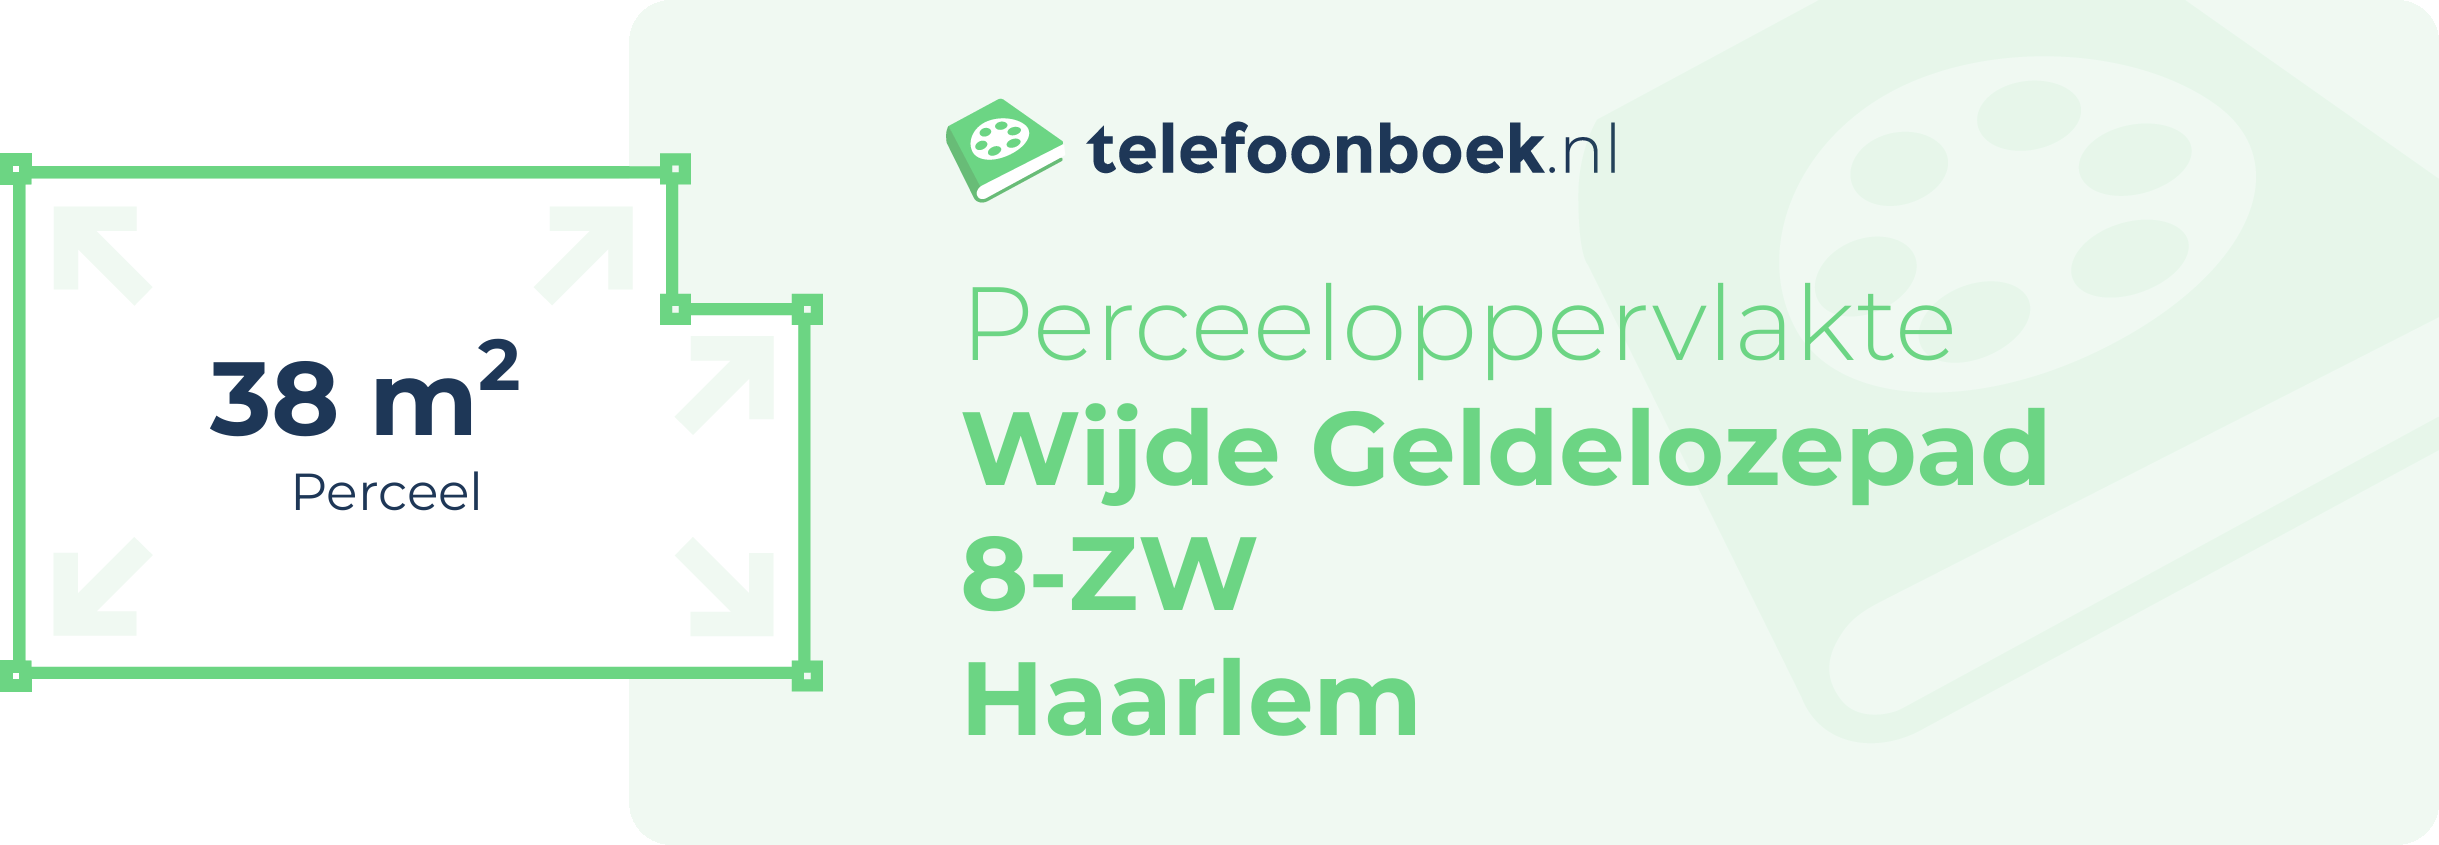 Perceeloppervlakte Wijde Geldelozepad 8-ZW Haarlem